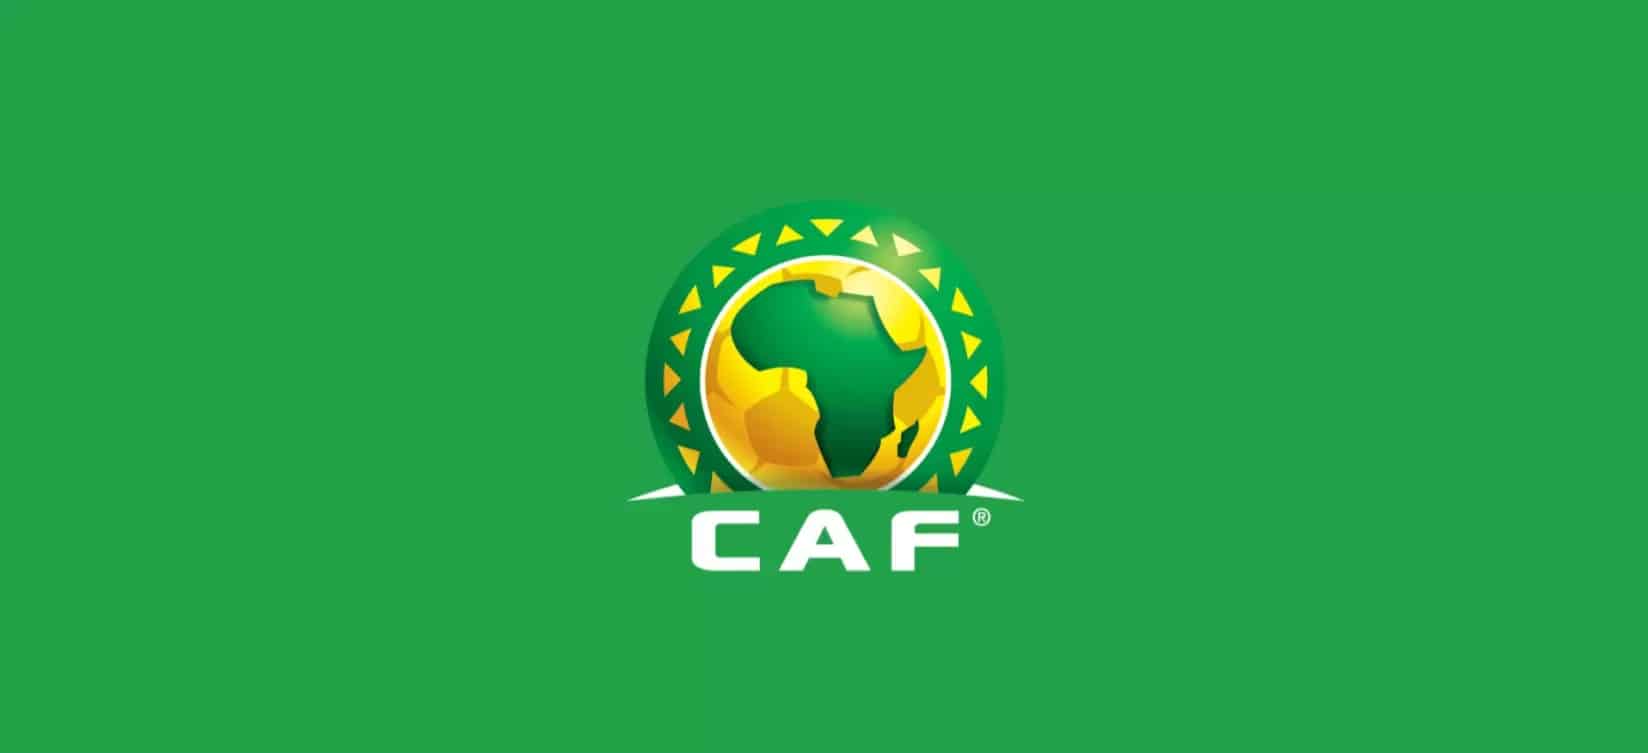 Zalan Fc Wapinzani wa Yanga CAF 2022